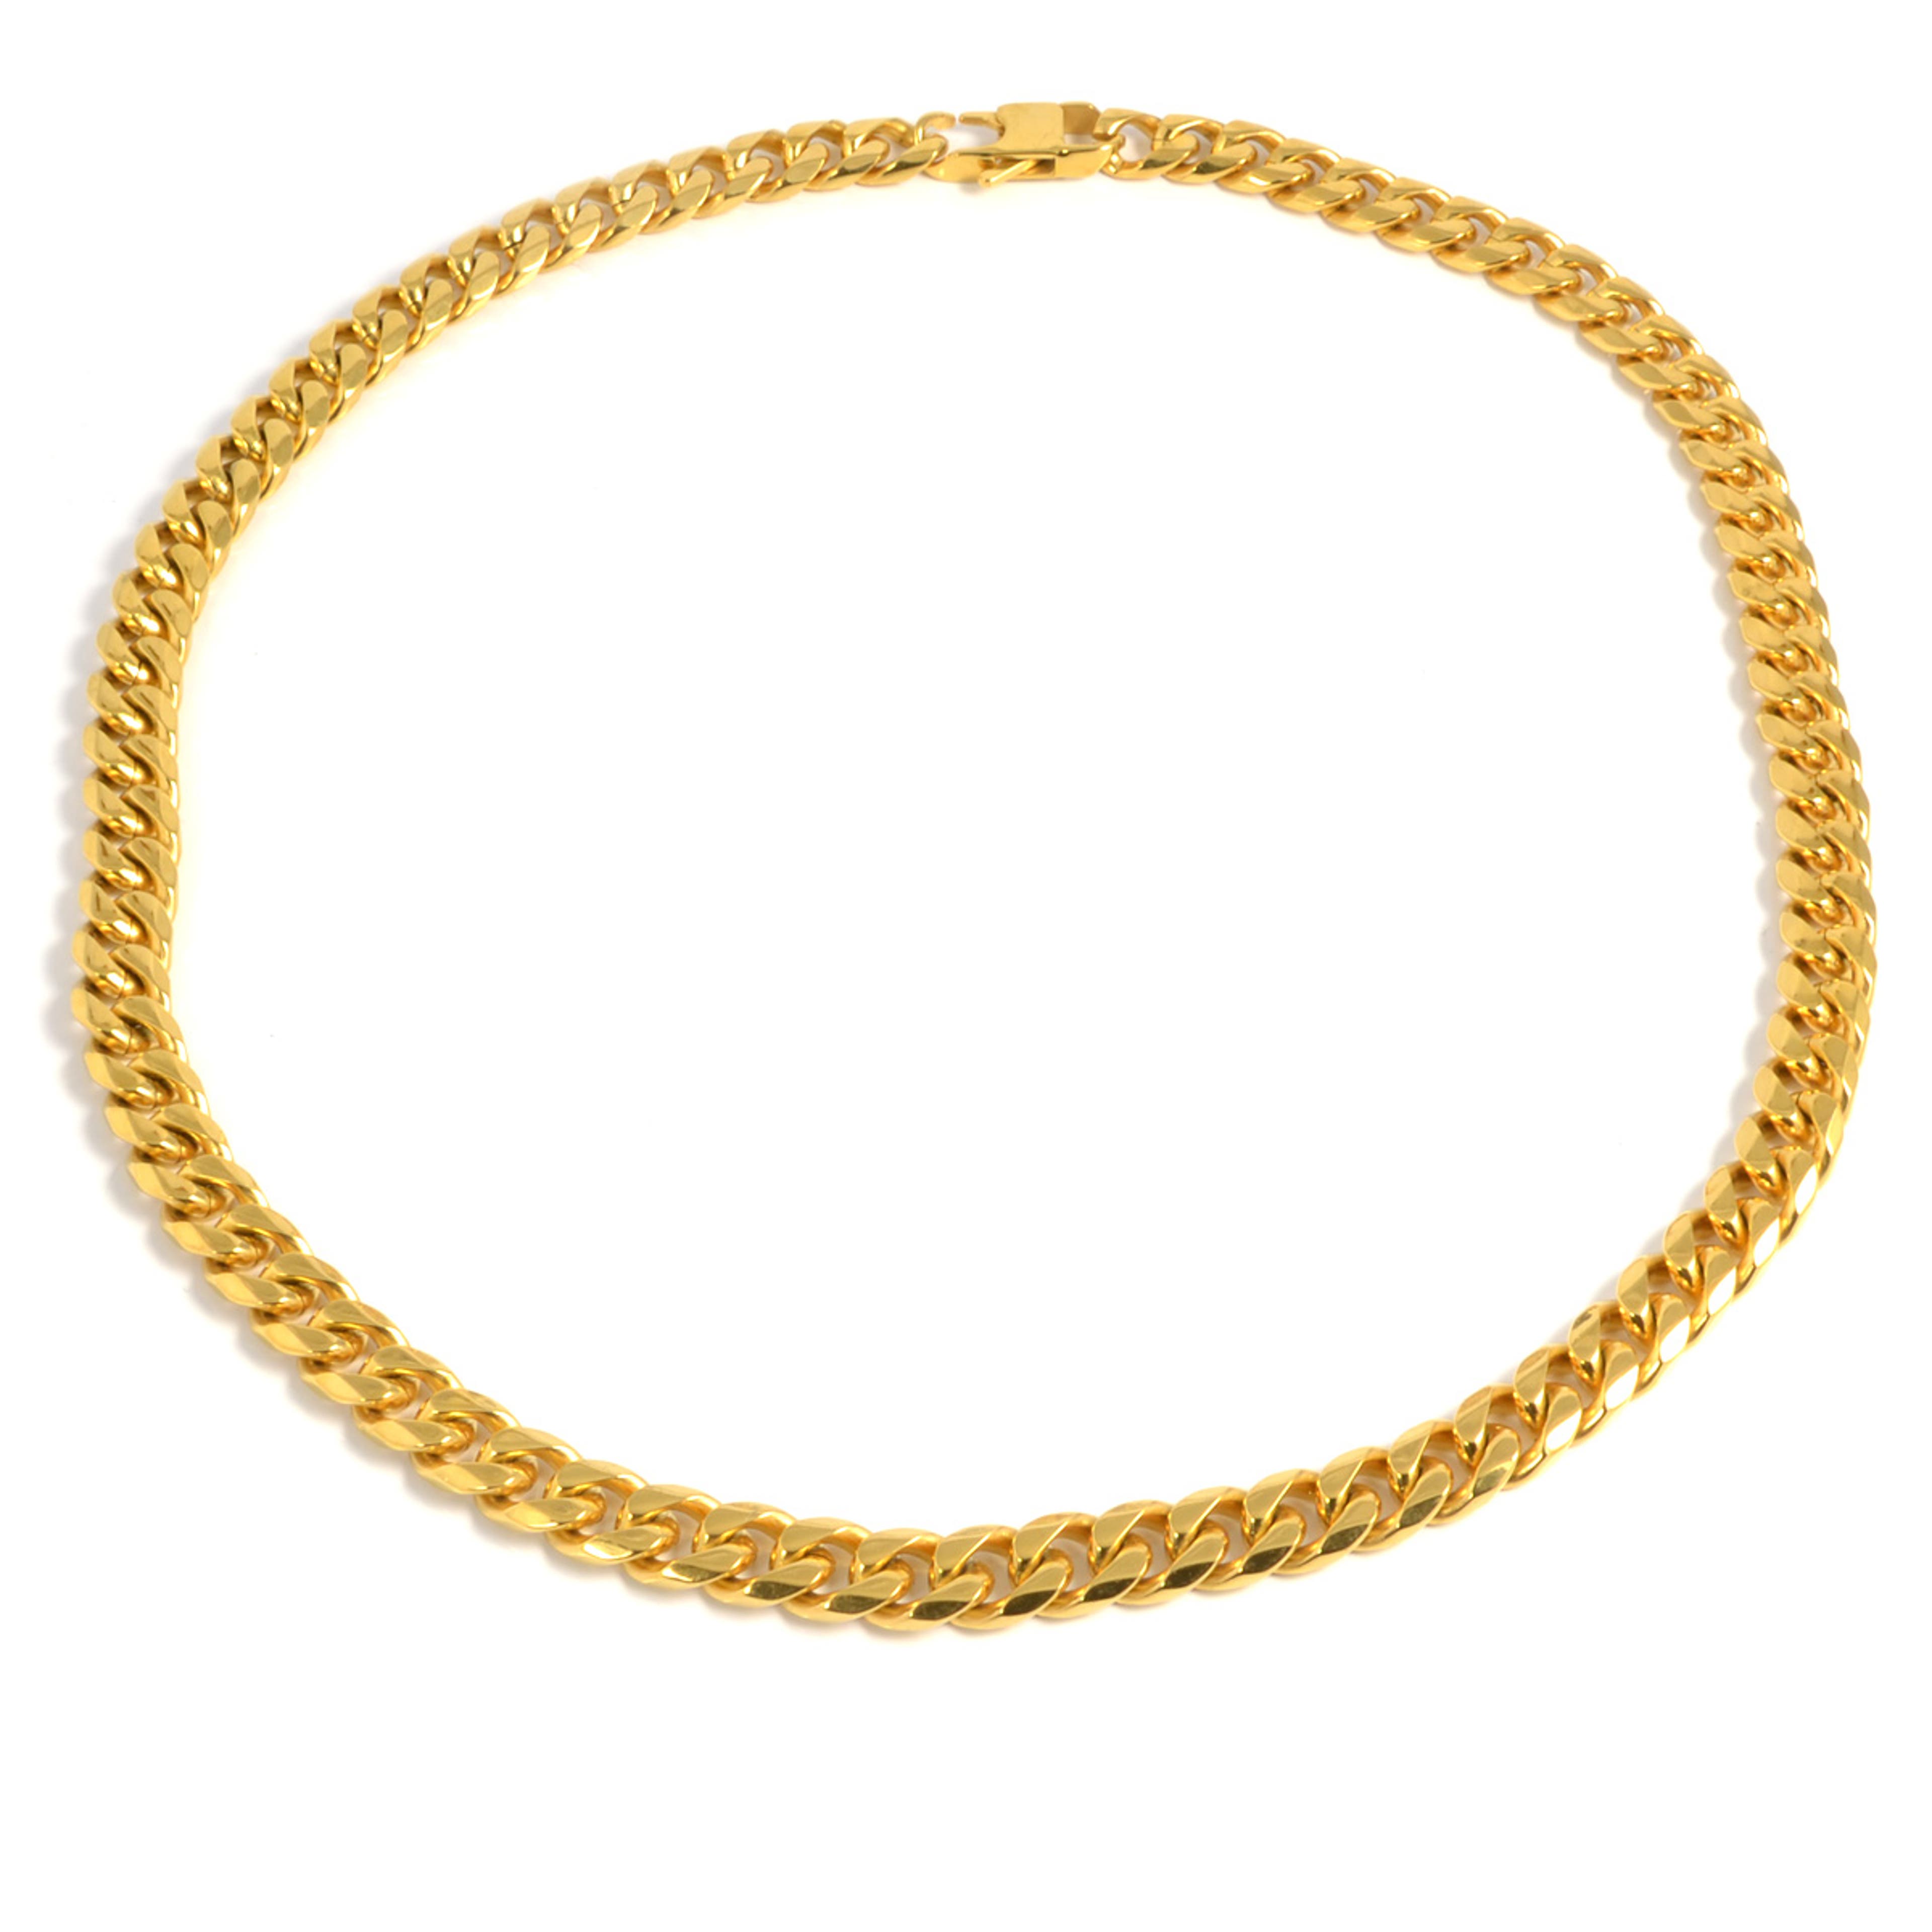 Halskette mit einzigartigem Verschluss